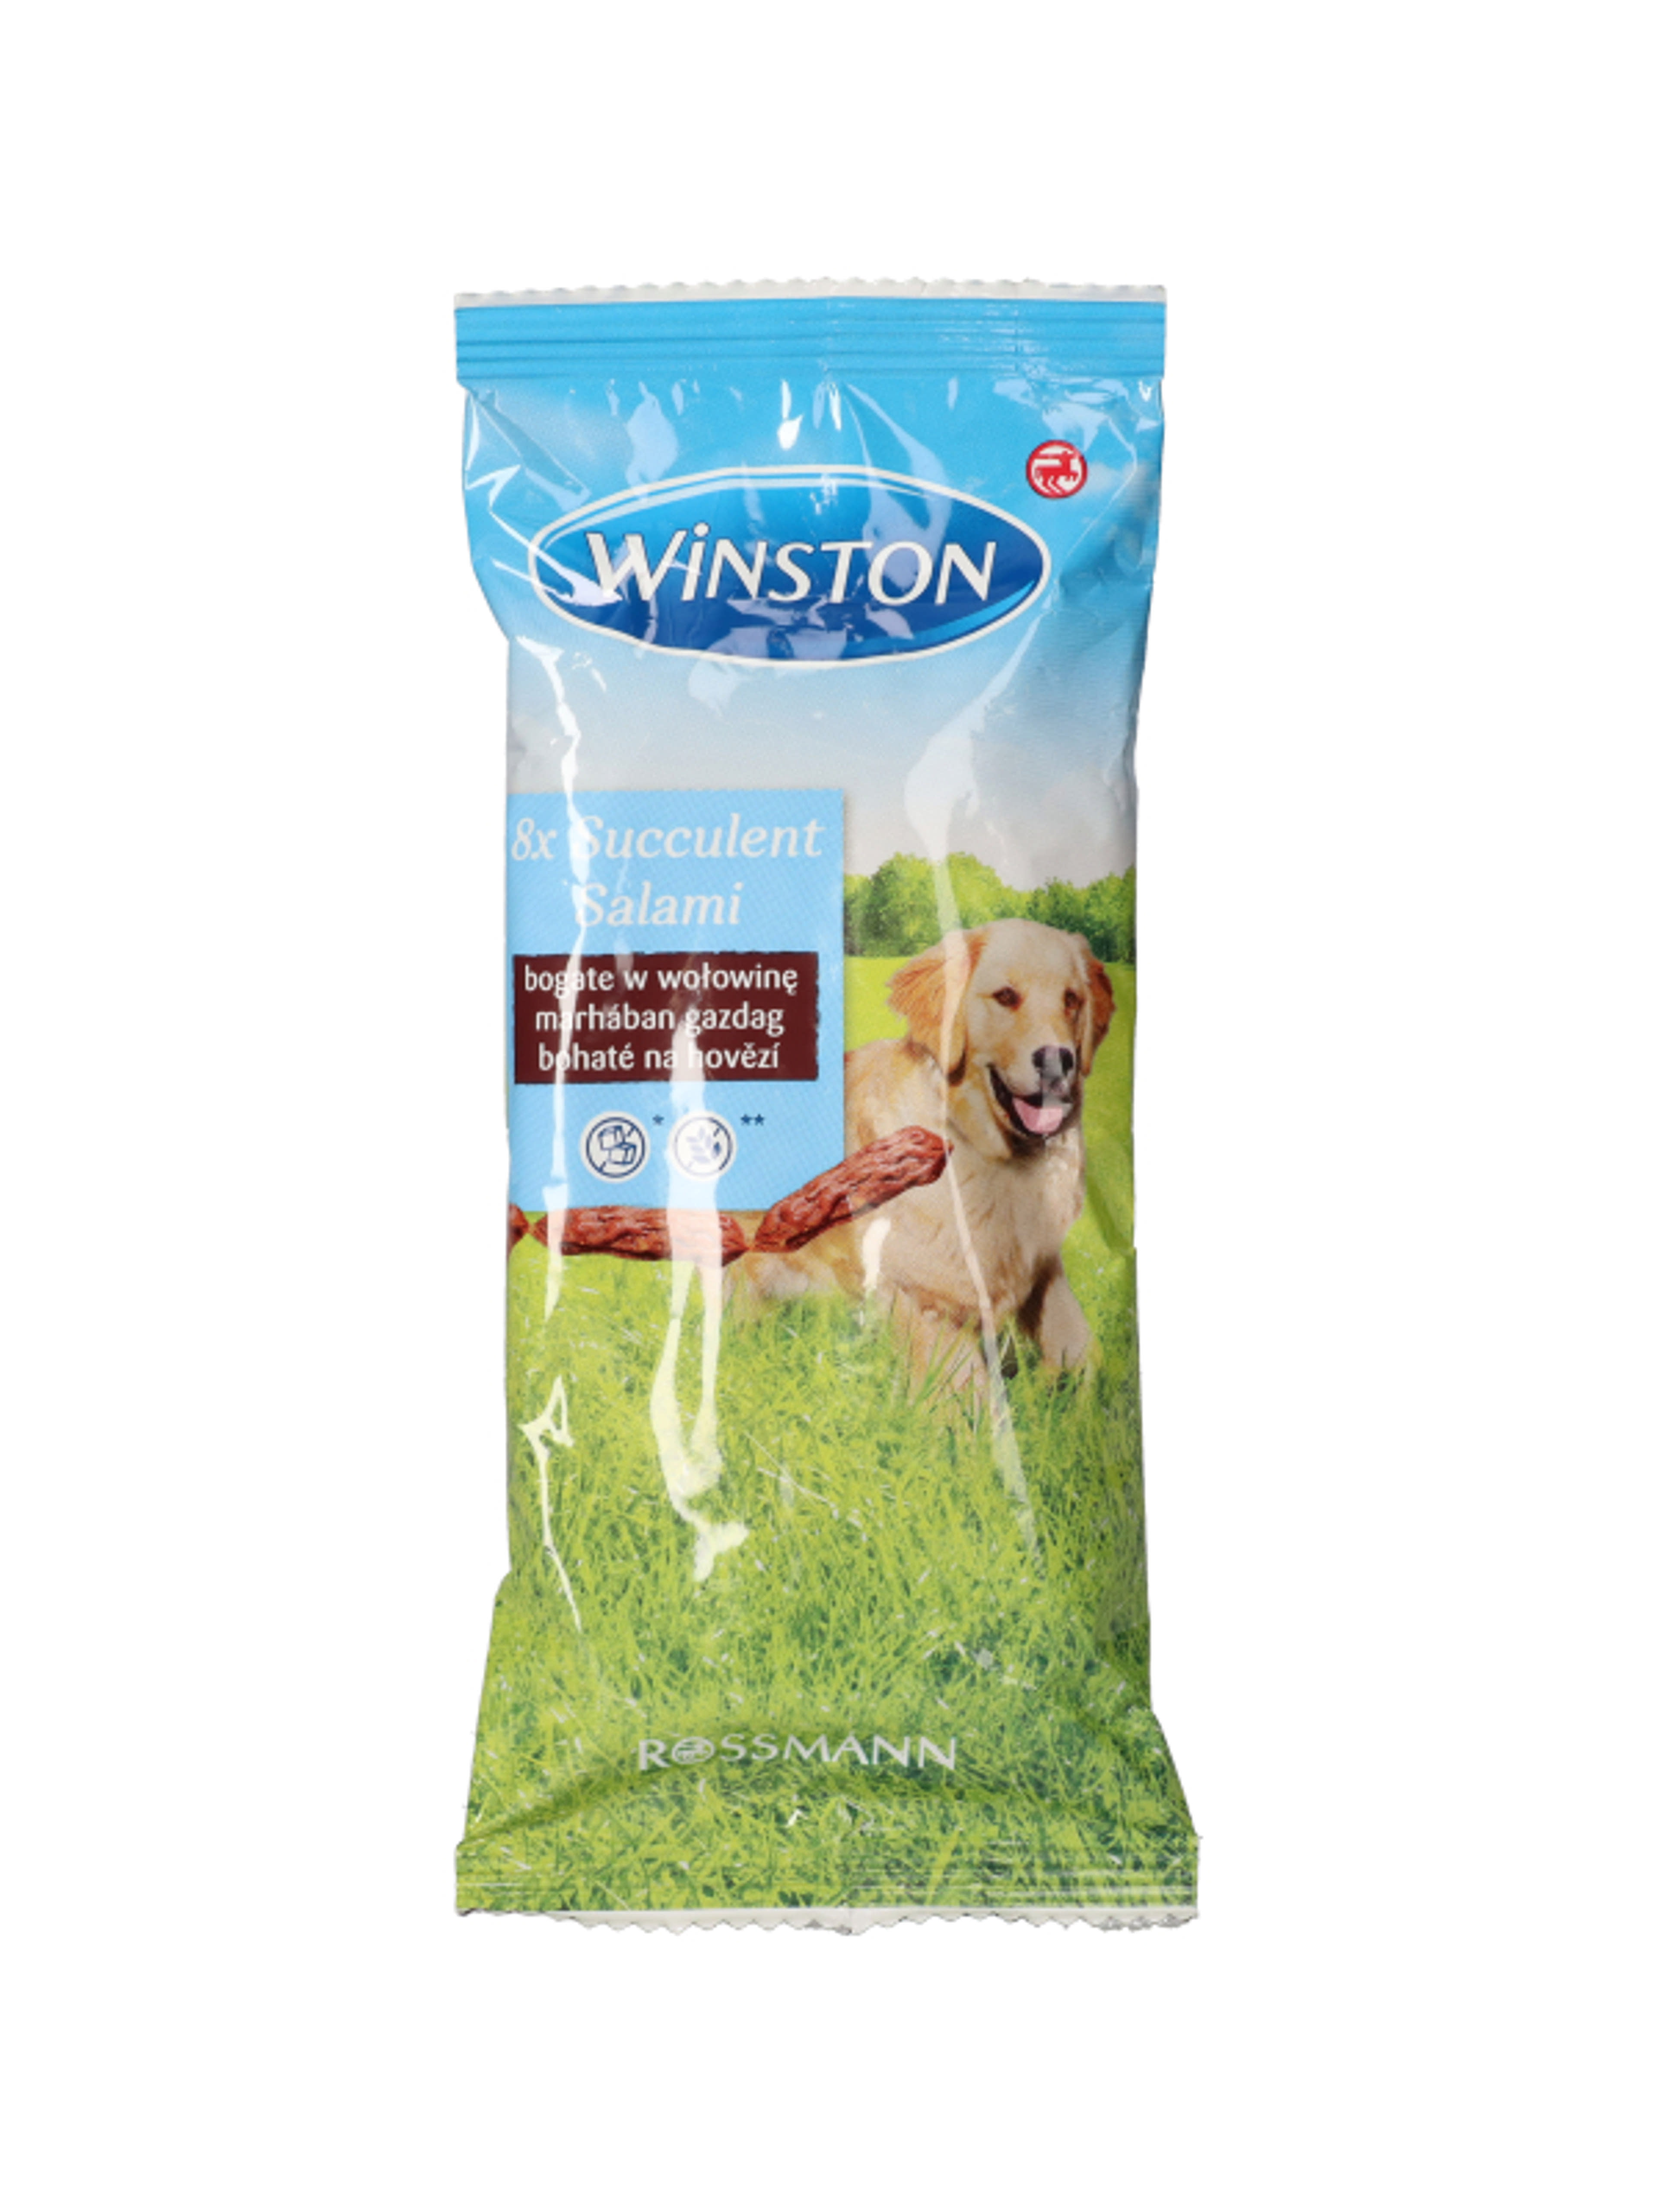 Winston jutalomfalat kutyáknak, szaftos szalálmi - 60 g - 8db